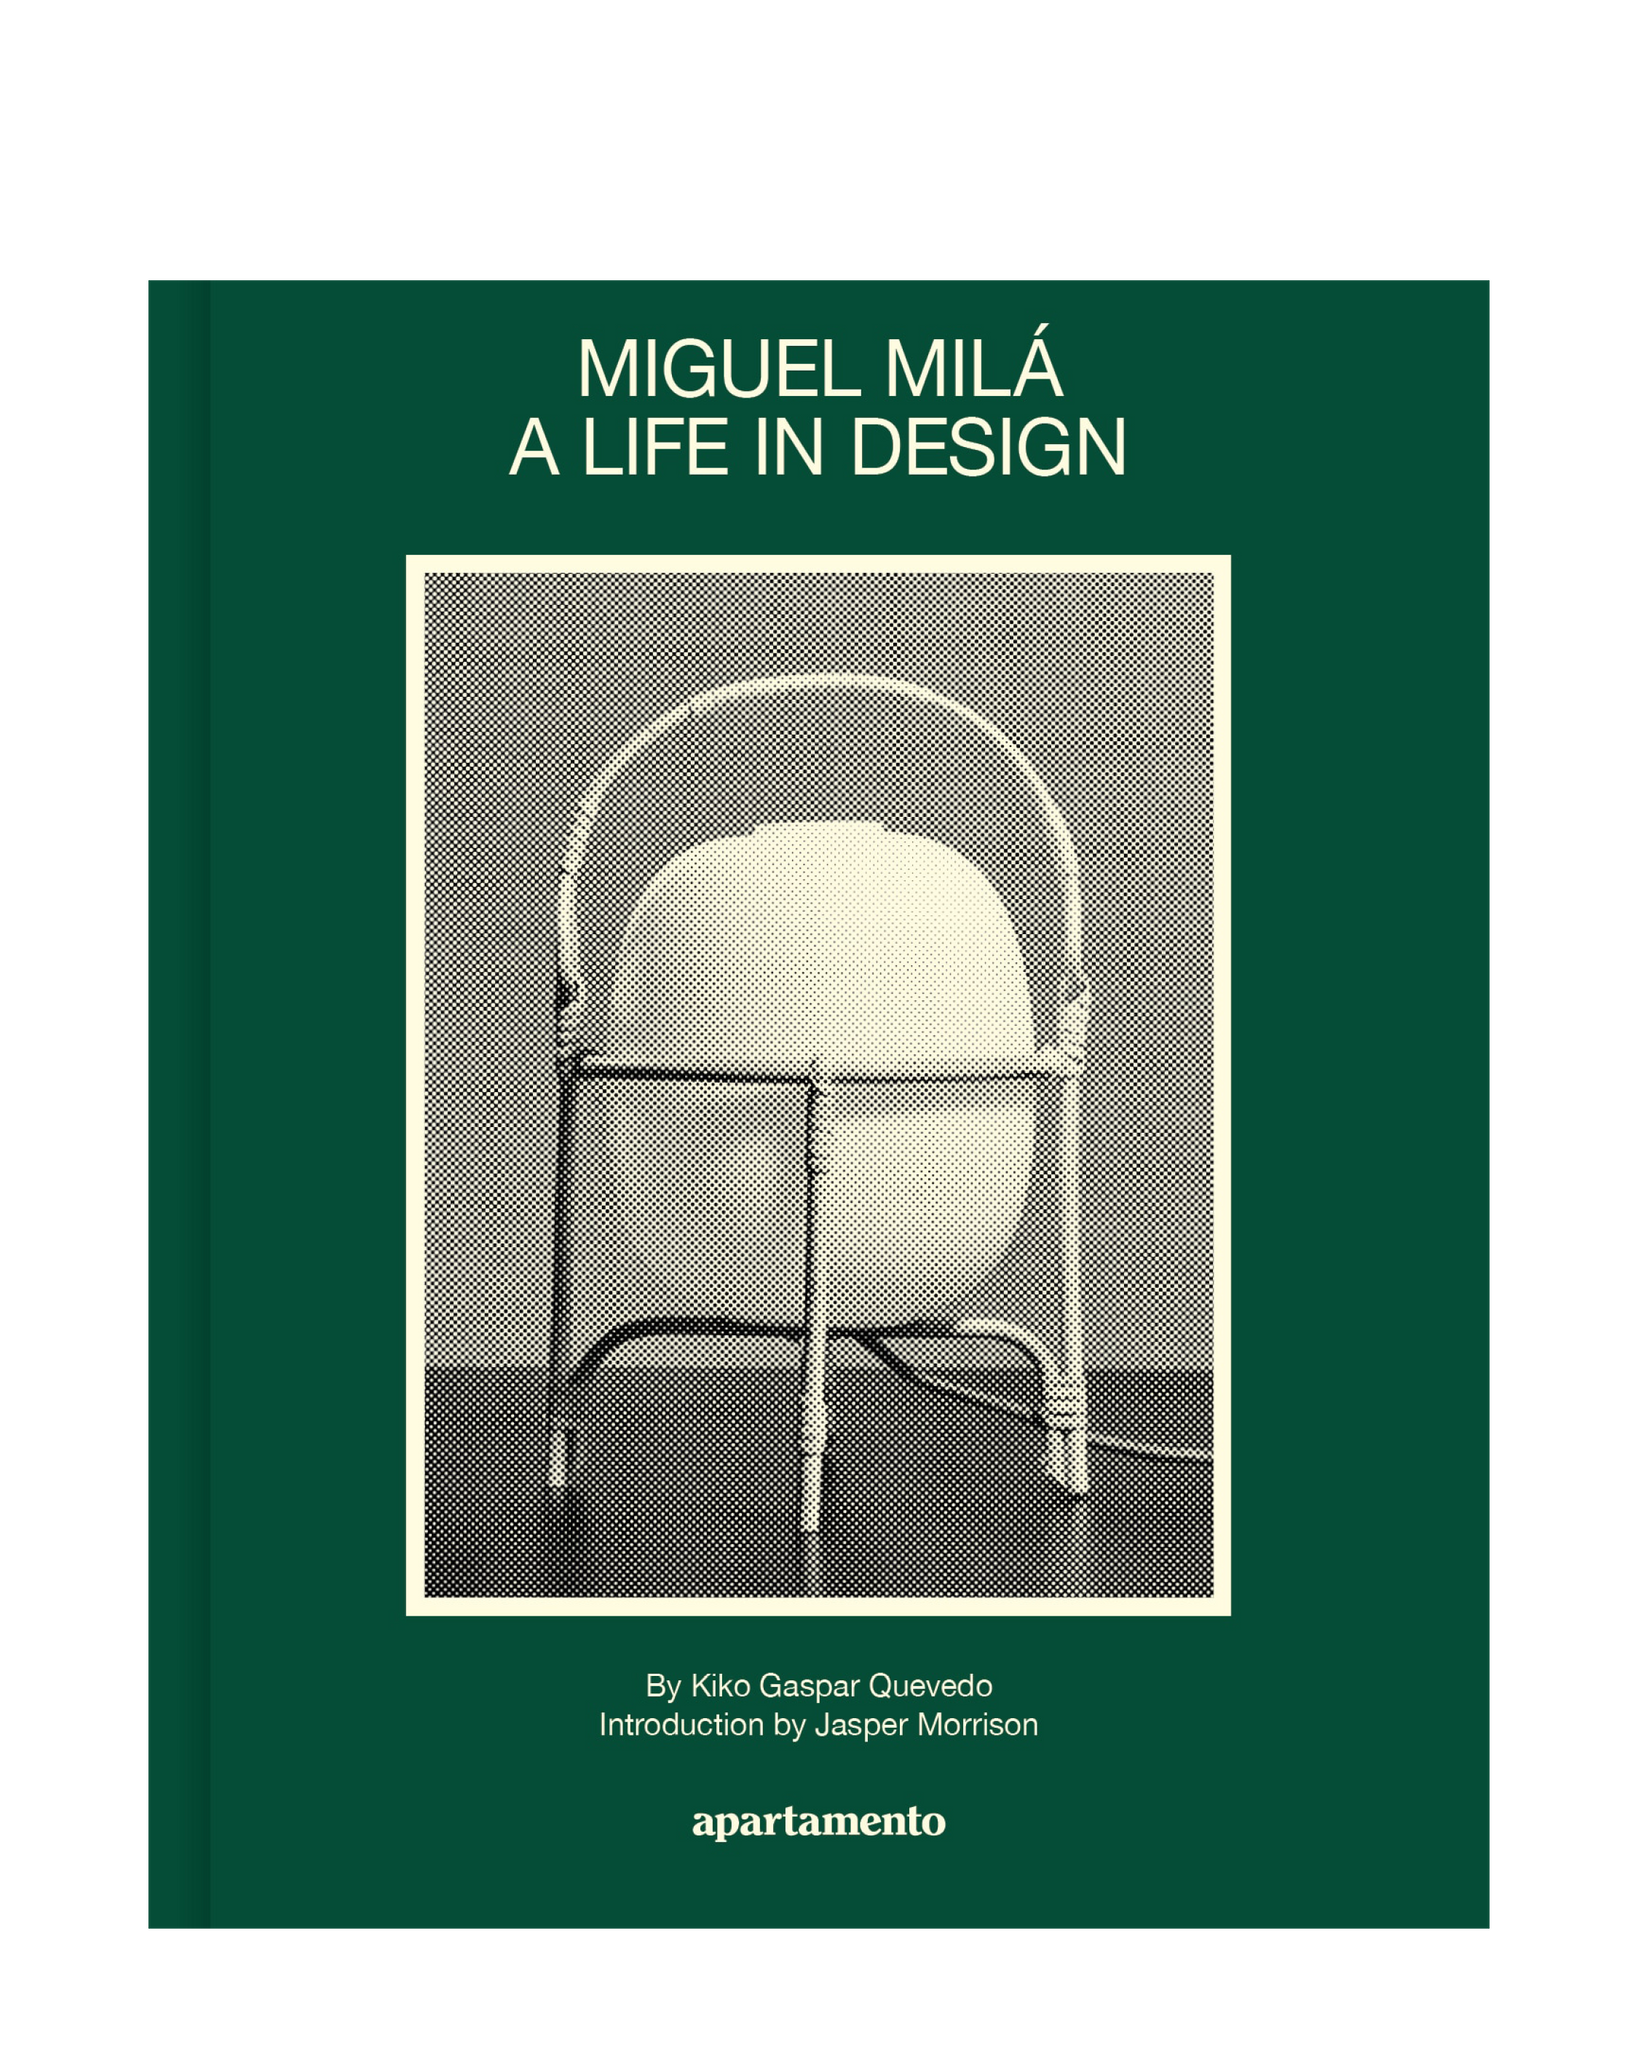 Miguel Milá - A Life in Design